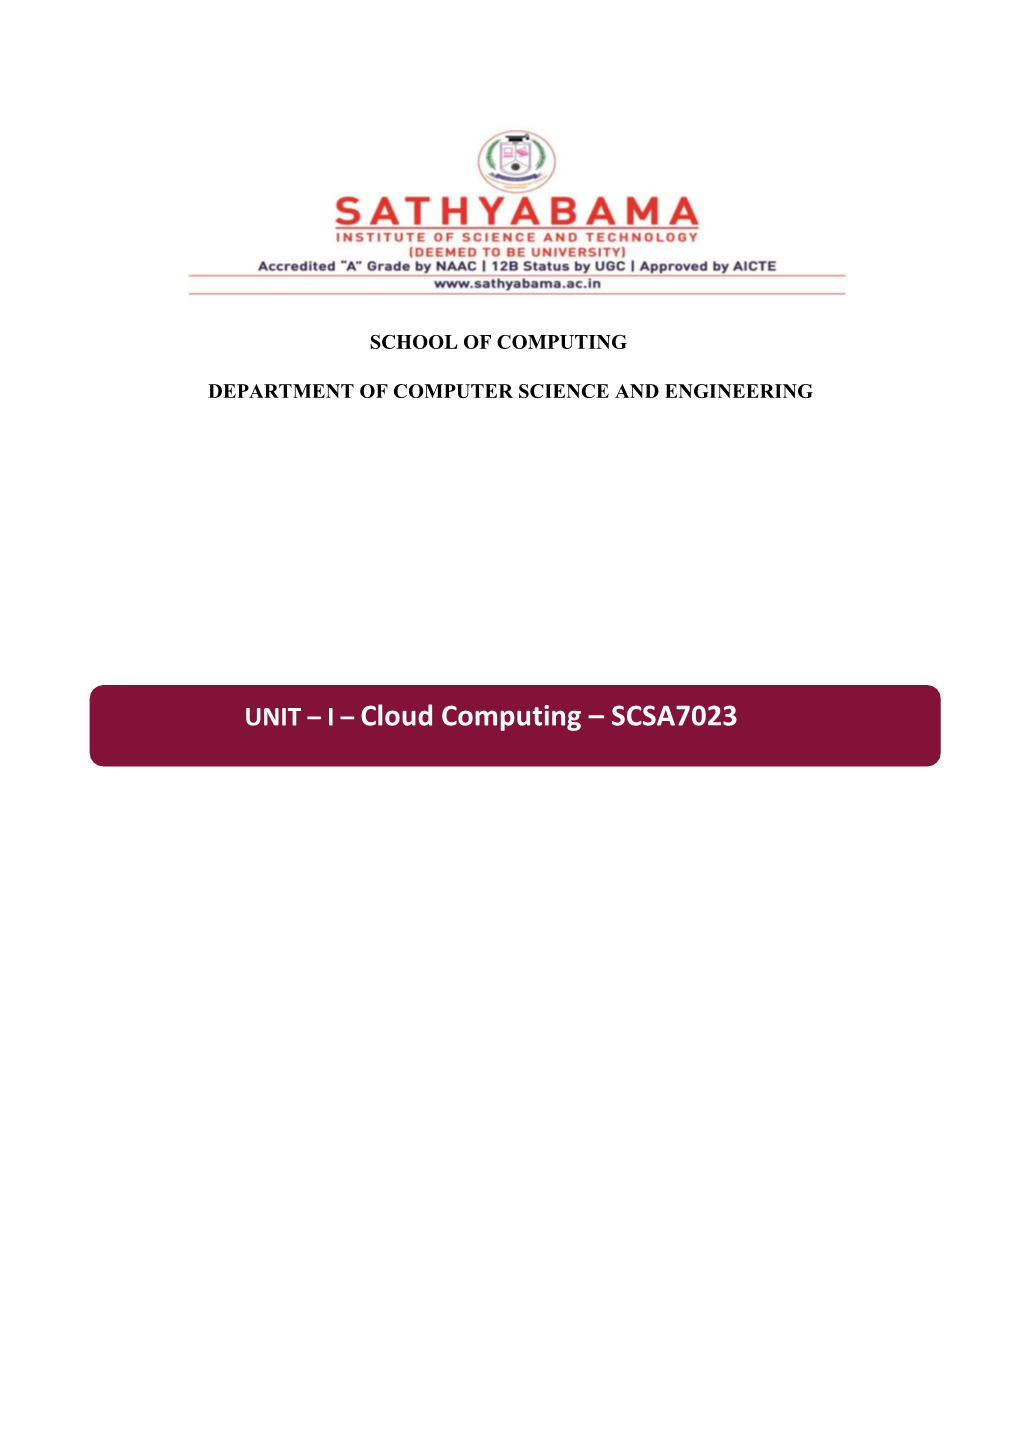 UNIT – I – Cloud Computing – SCSA7023 Unit – I